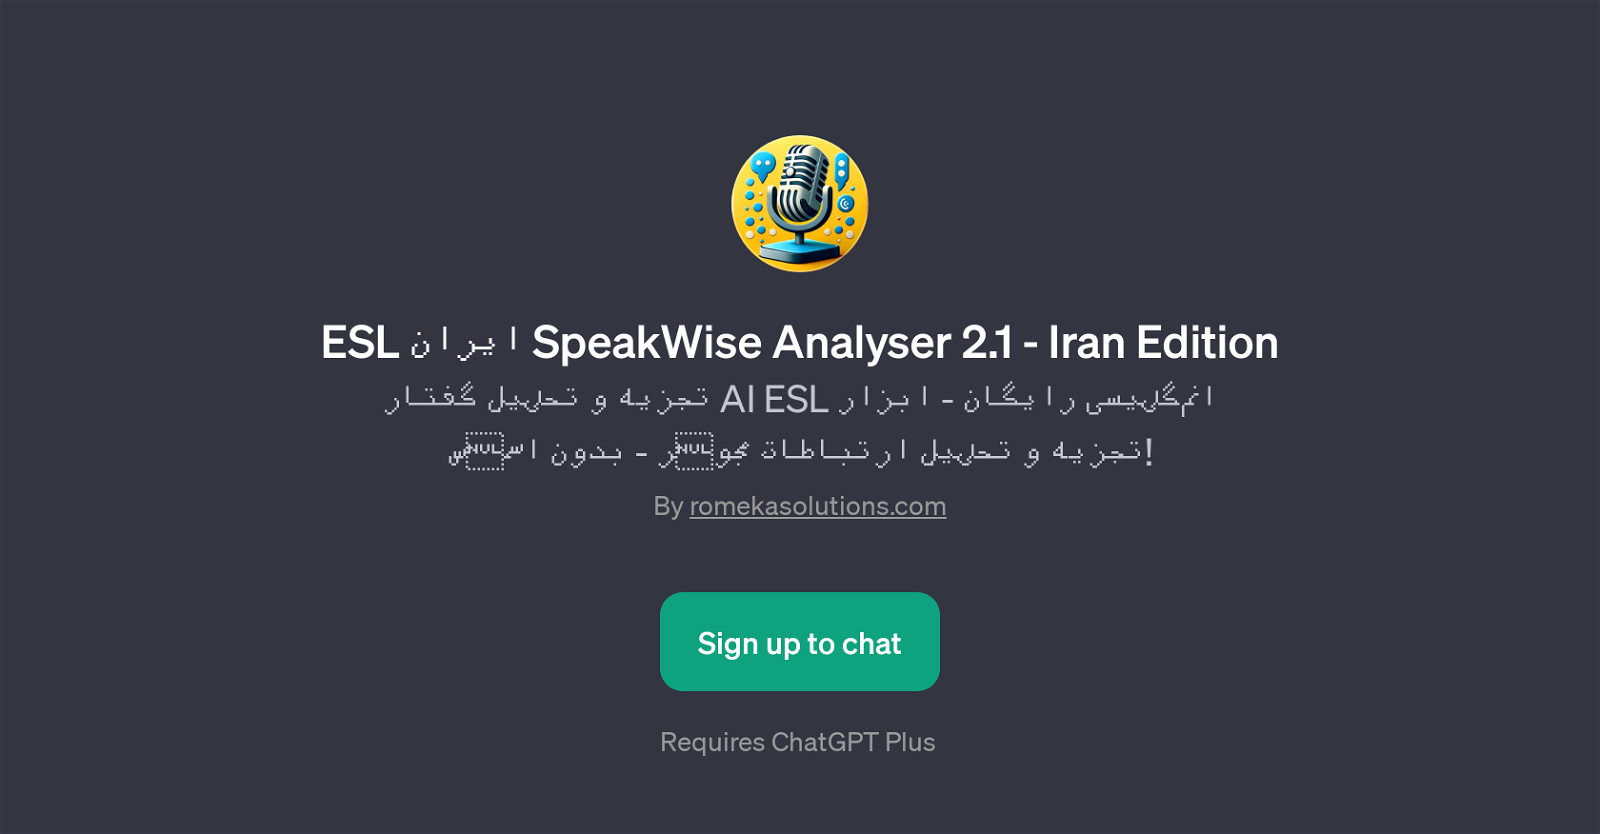 ESL  SpeakWise Analyser 2.1 - Iran Edition website